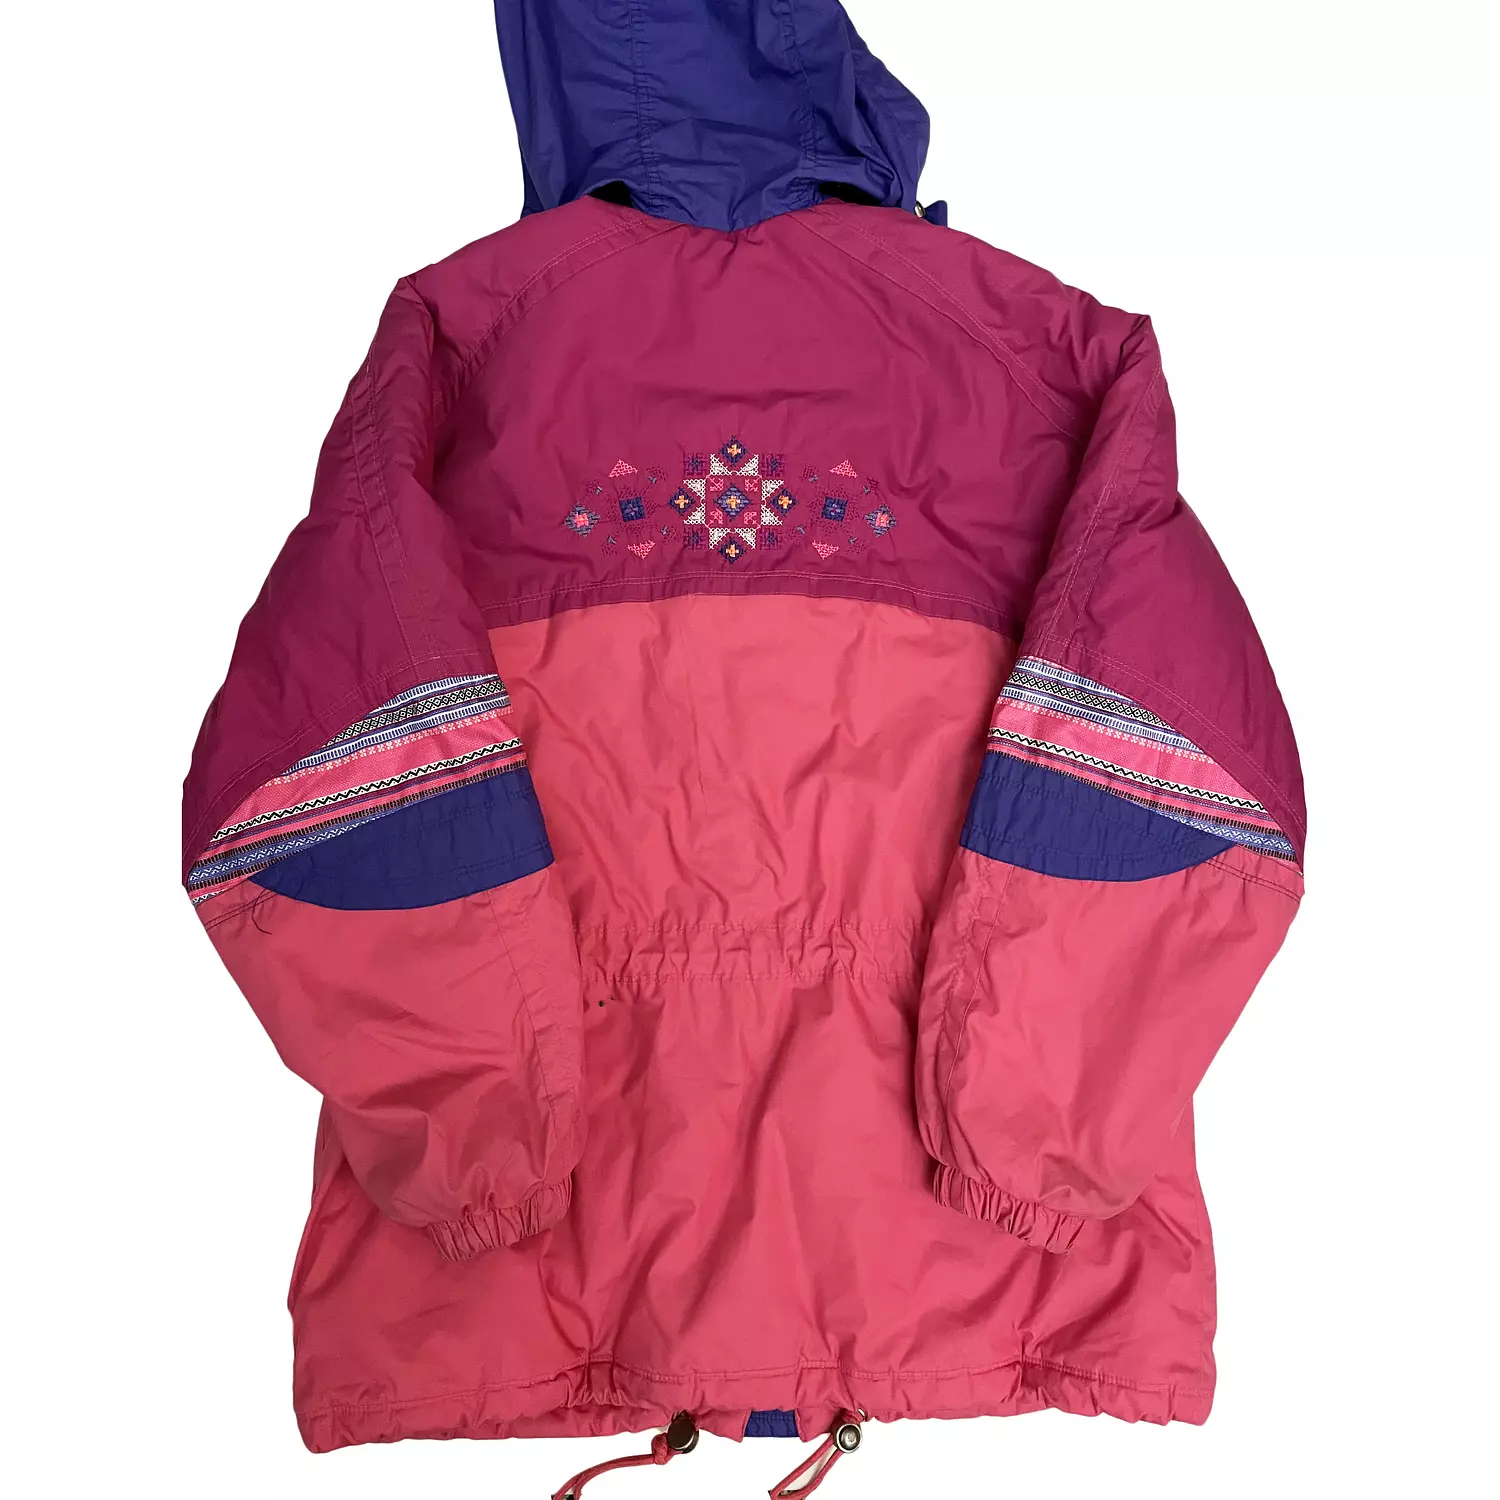 Pink Diadora ski jacket 2